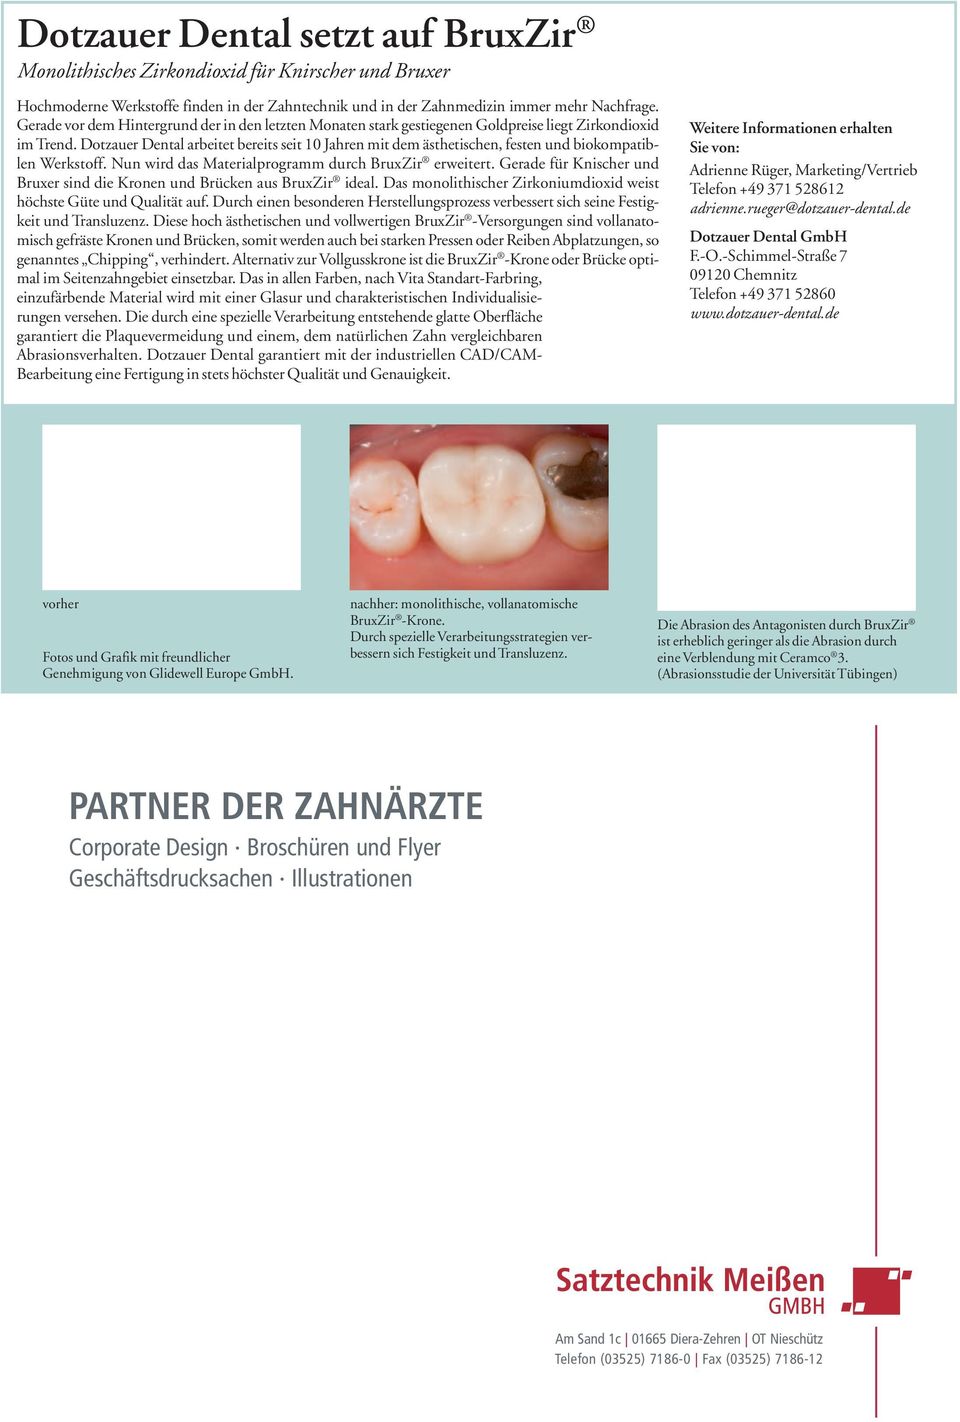 Dotzauer Dental arbeitet bereits seit 10 Jahren mit dem ästhetischen, festen und biokompatib - len Werkstoff. Nun wird das Materialprogramm durch BruxZir erweitert.